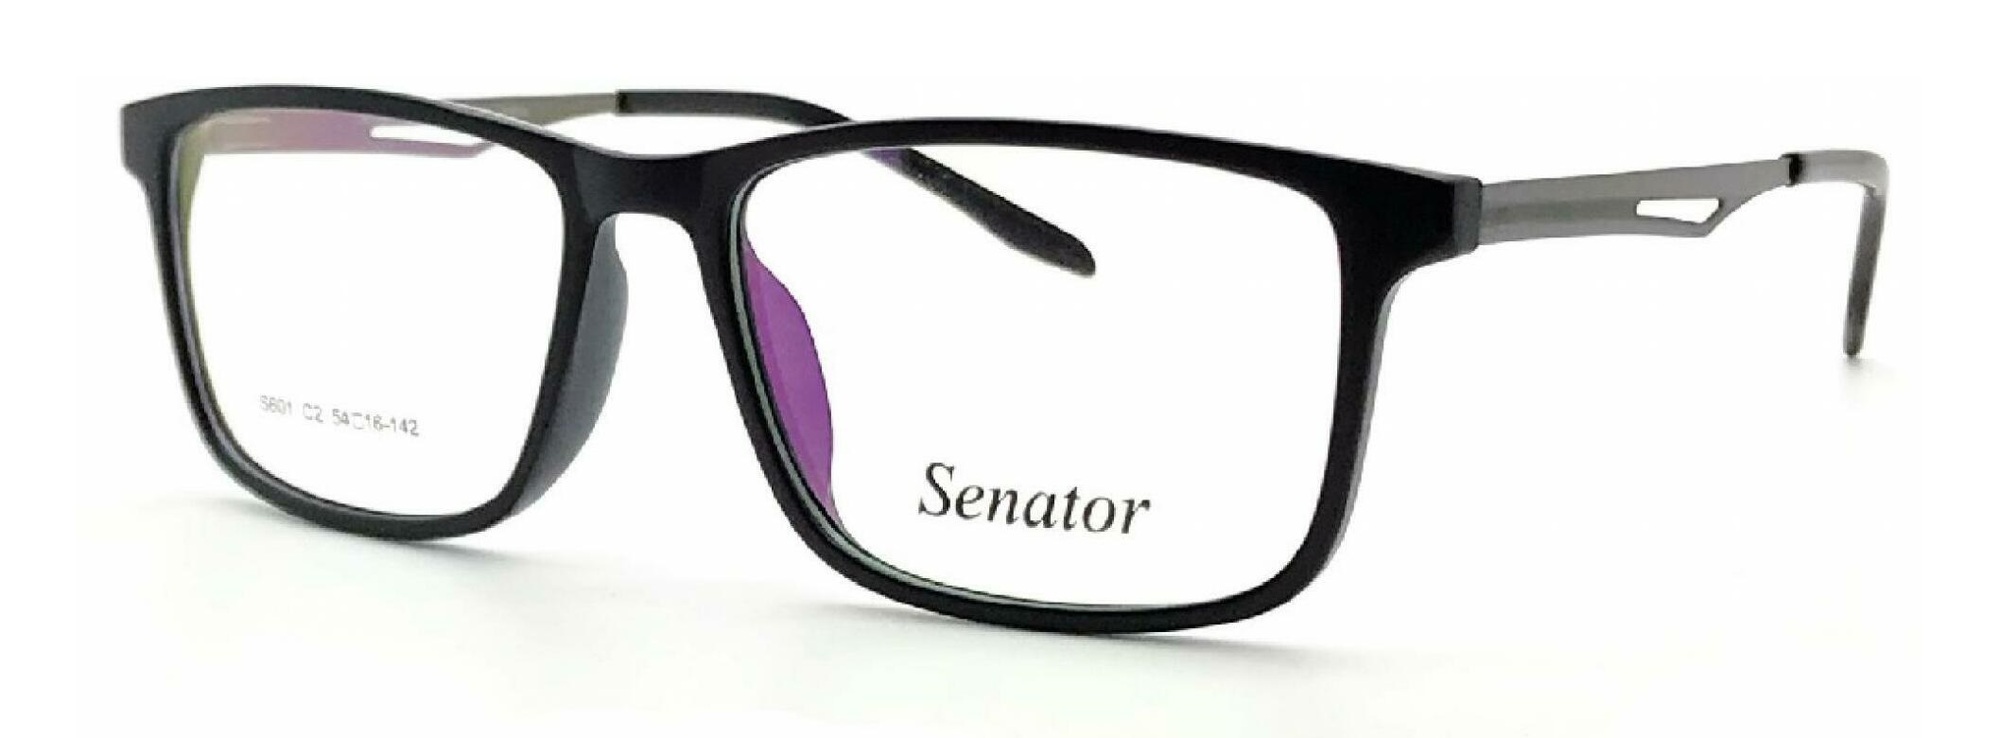 senator_601_black_silver